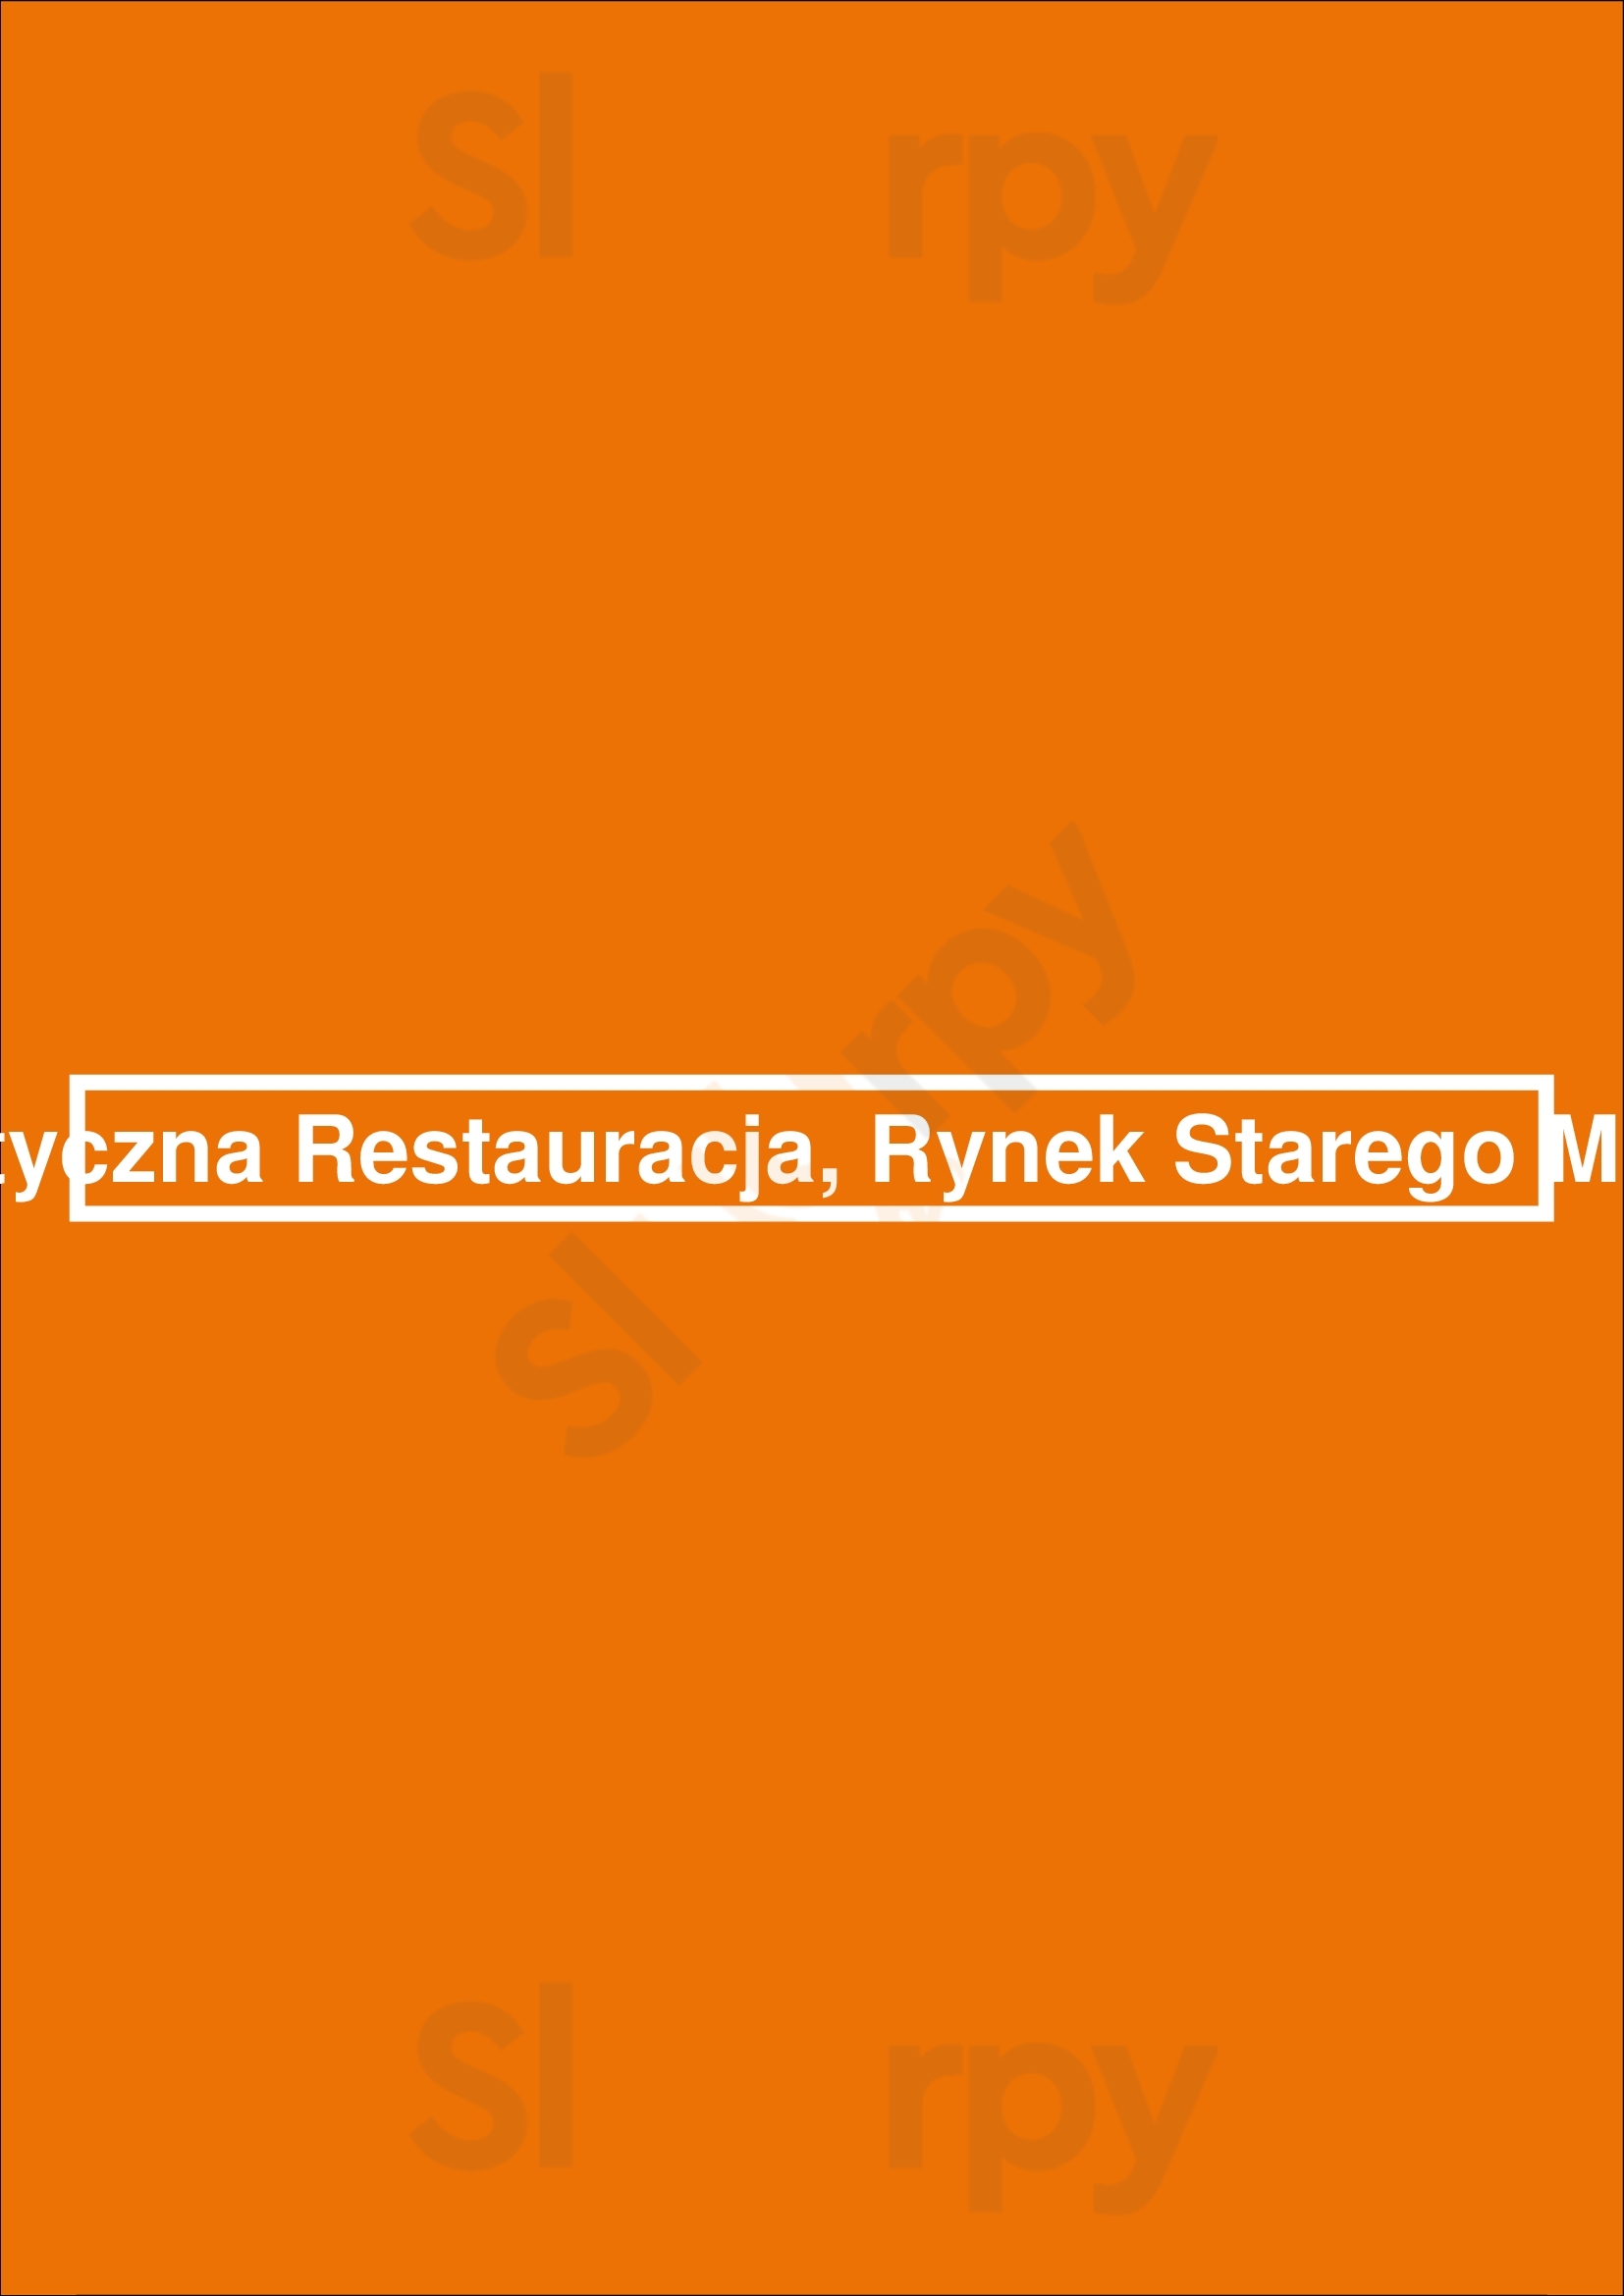 Romantyczna Restauracja, Rynek Starego Miasta 18 Warszawa Menu - 1